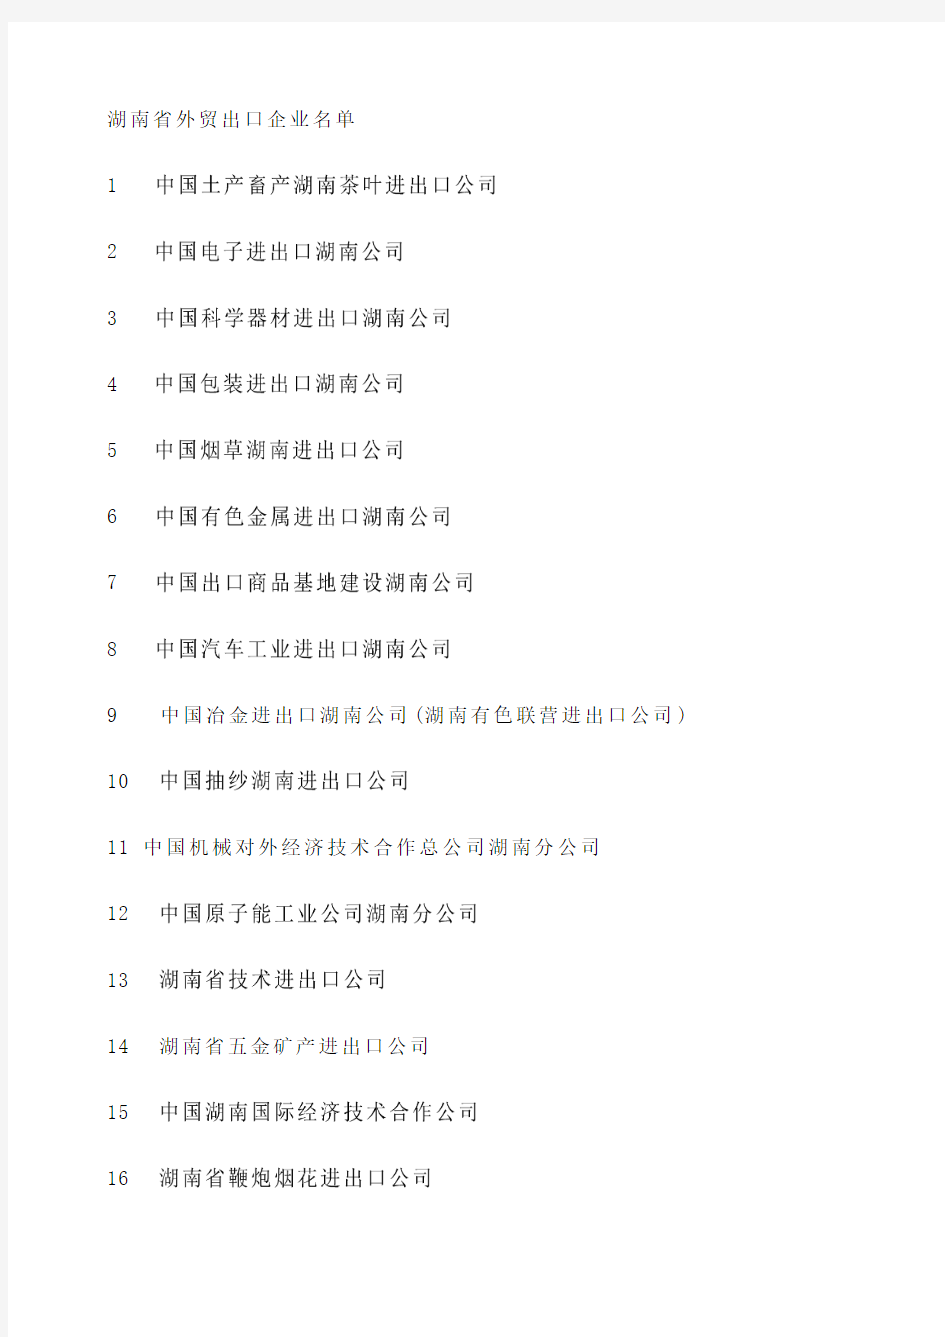 湖南省外贸出口企业名单